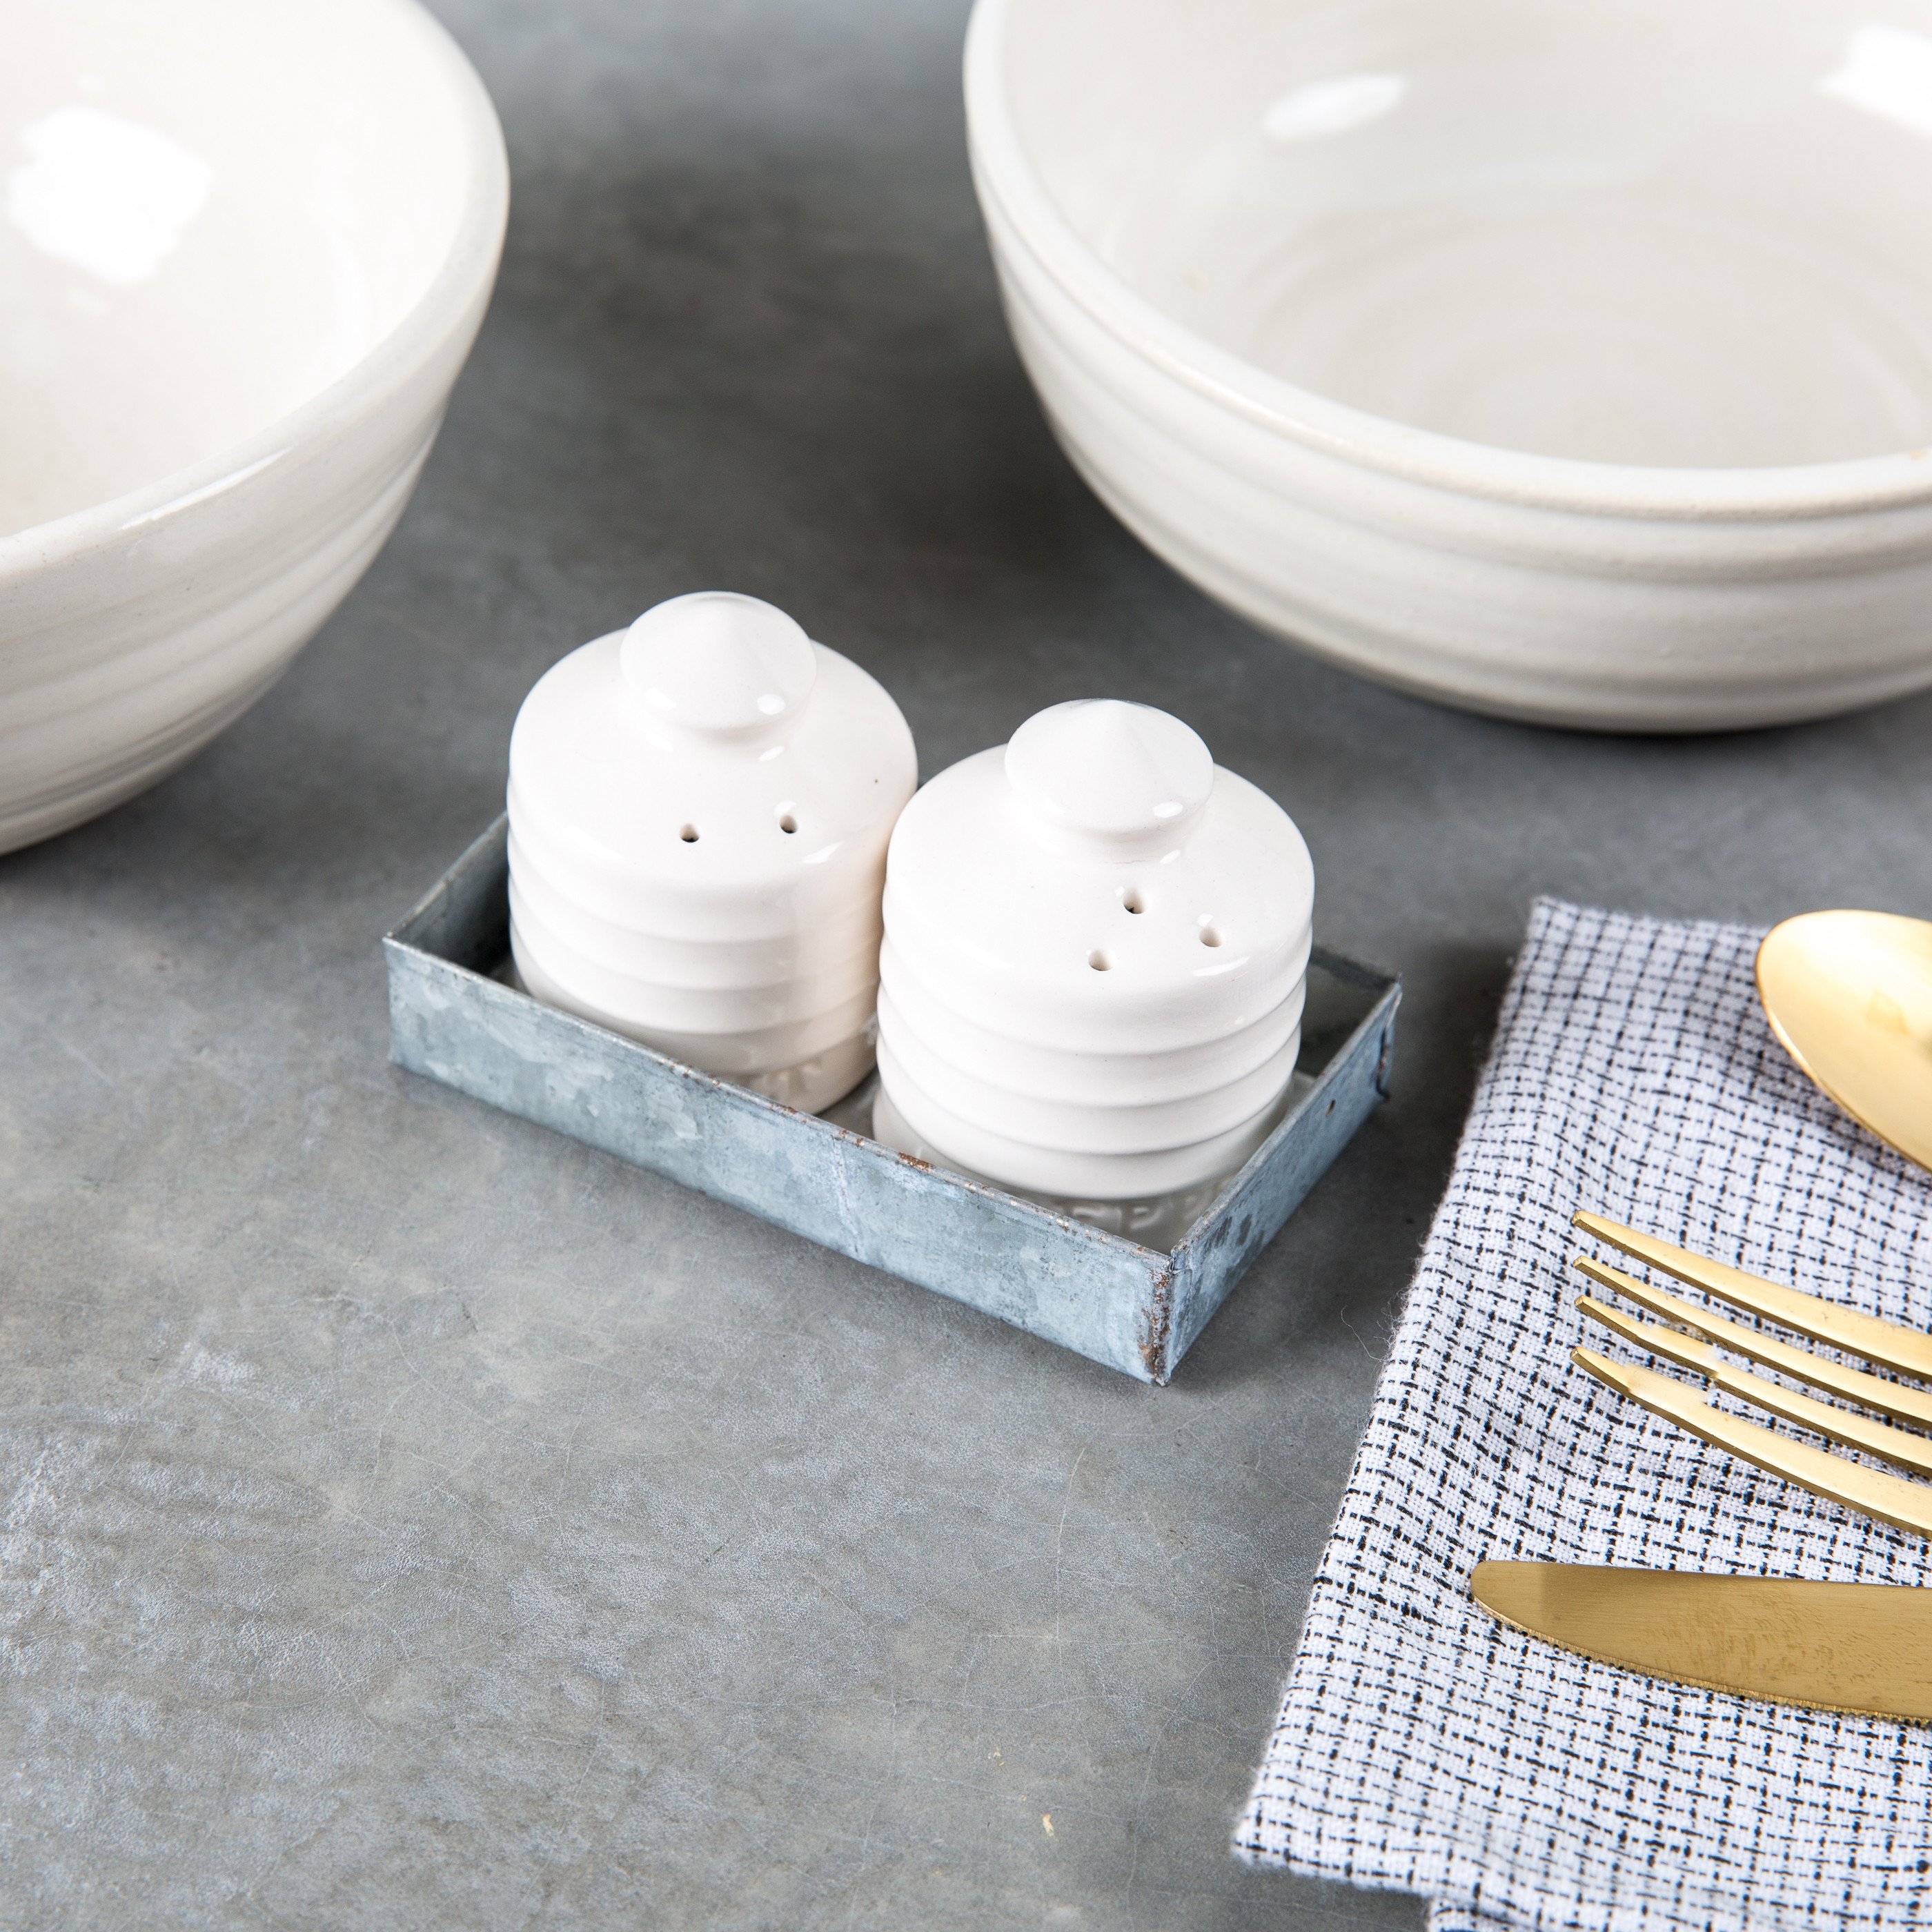 Better Homes & Gardens Porcelain Salt and Pepper Shaker Sets, 4 sets